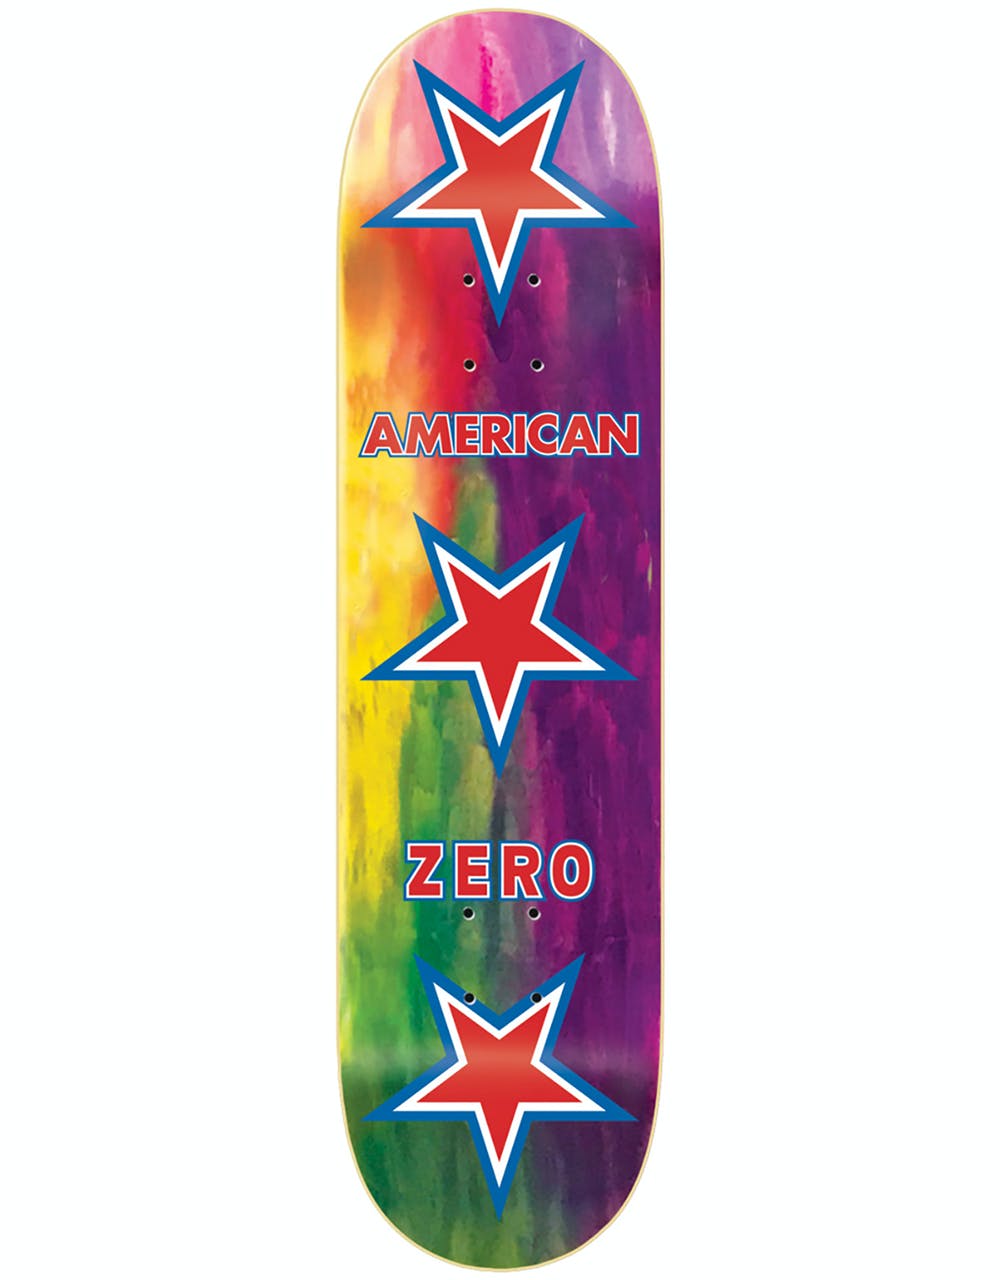 Zero American Zero Skateboard Deck - 8.5"